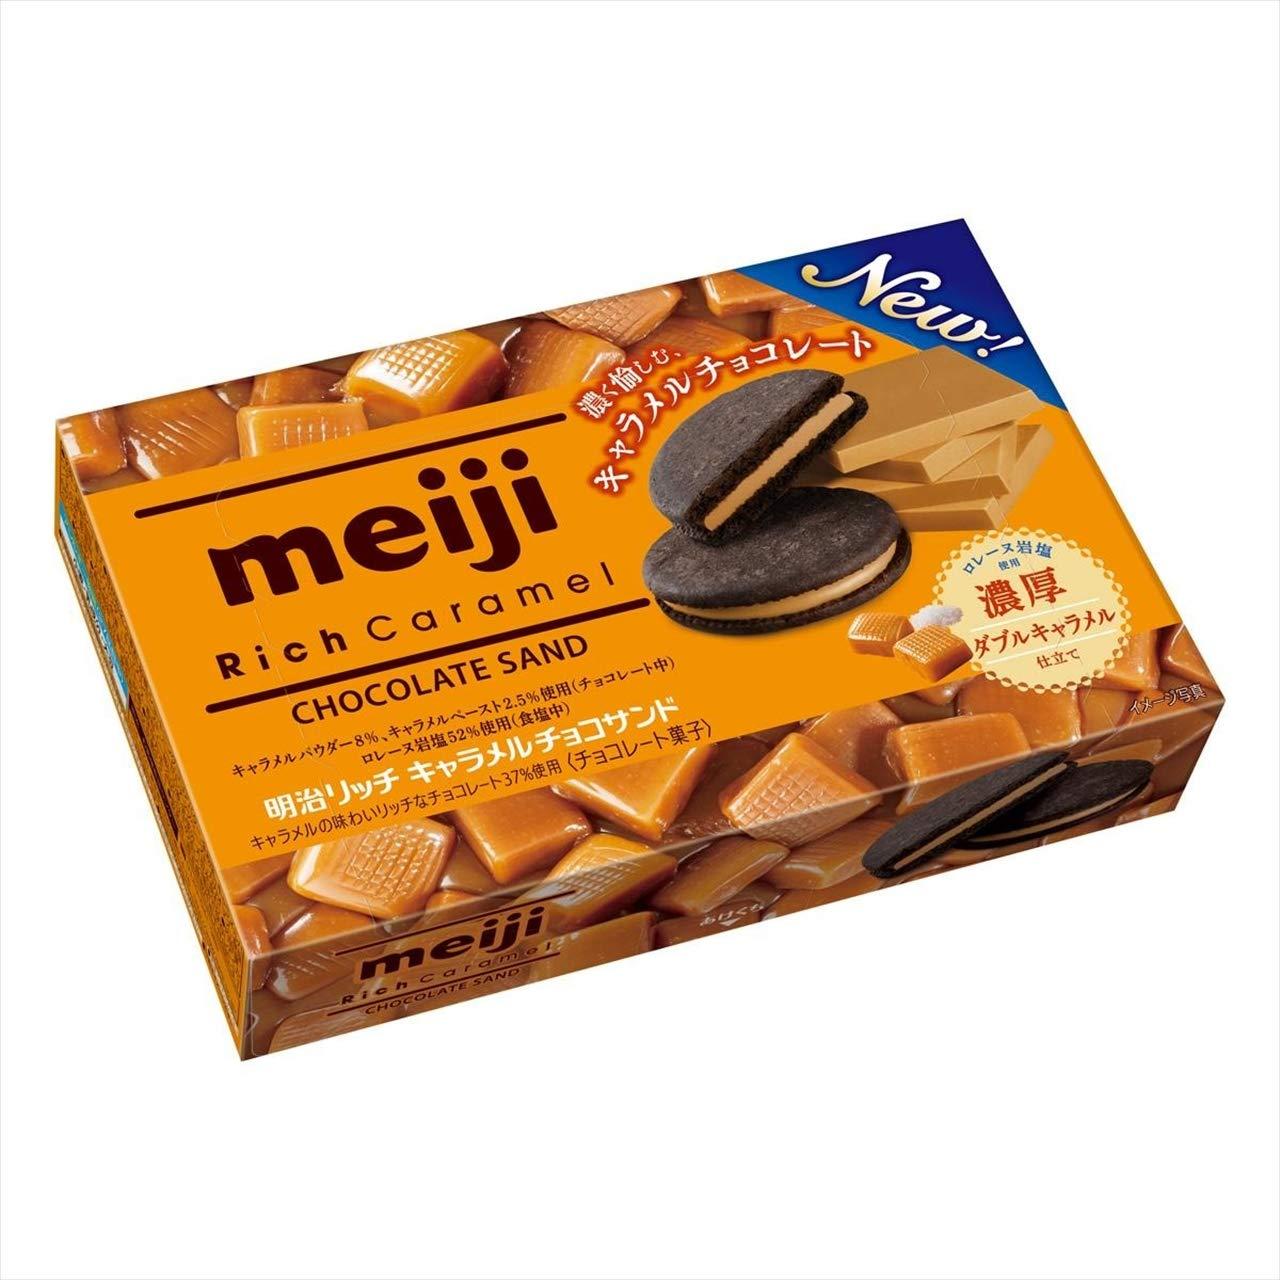 Meiji Rich Caramel Chocolate Sand Biscuit (96G)